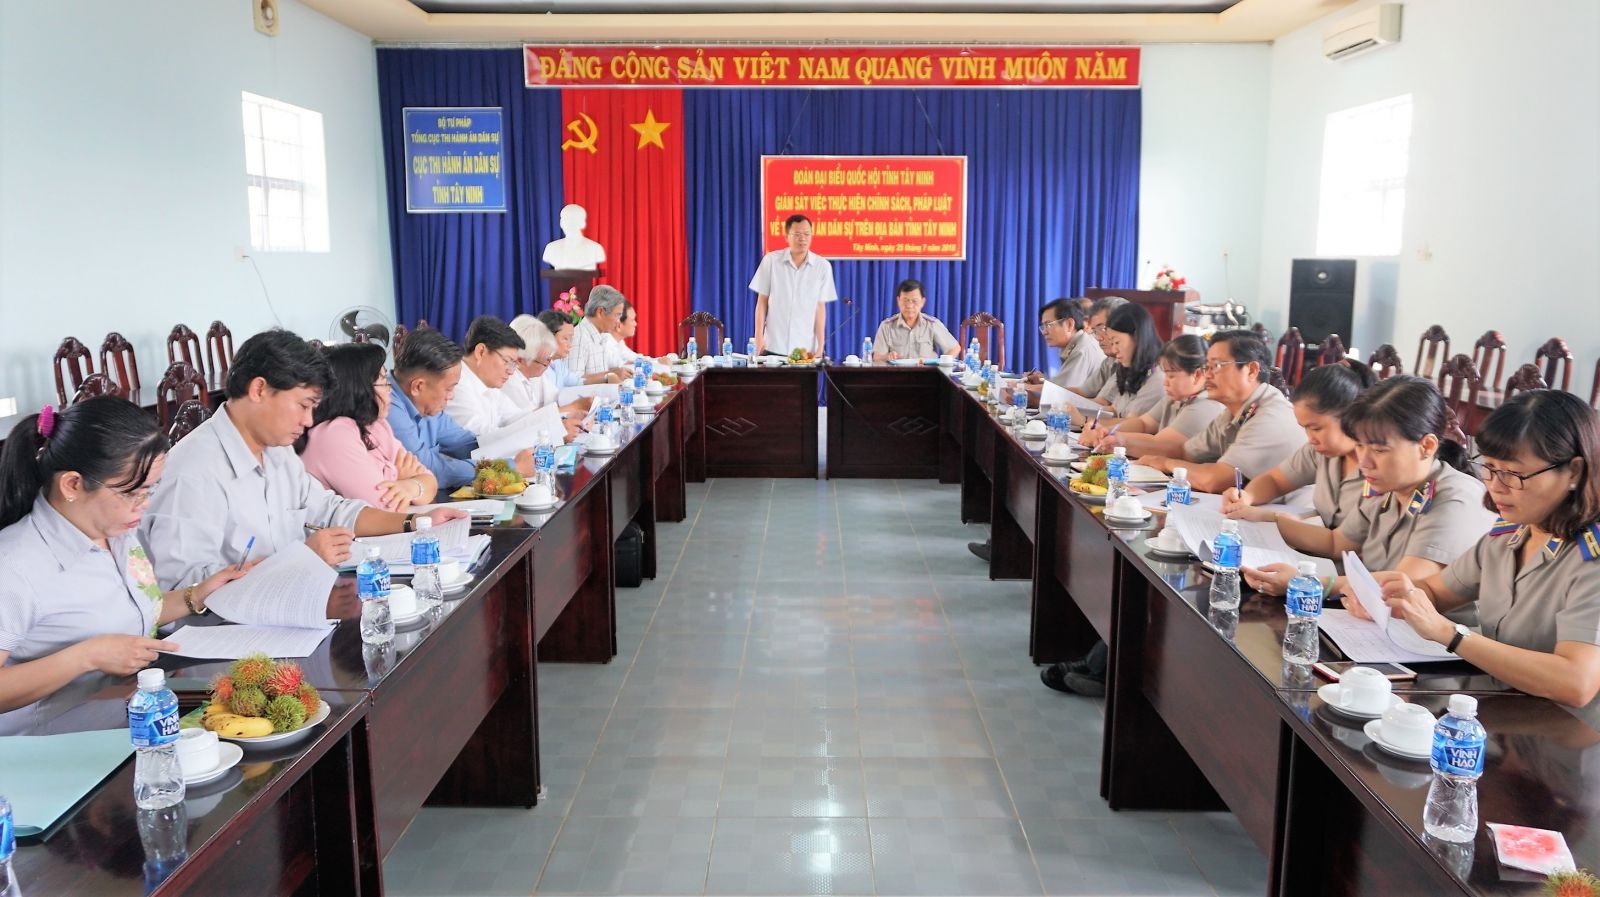 Điểm báo in Tây Ninh ngày 08.8.2018